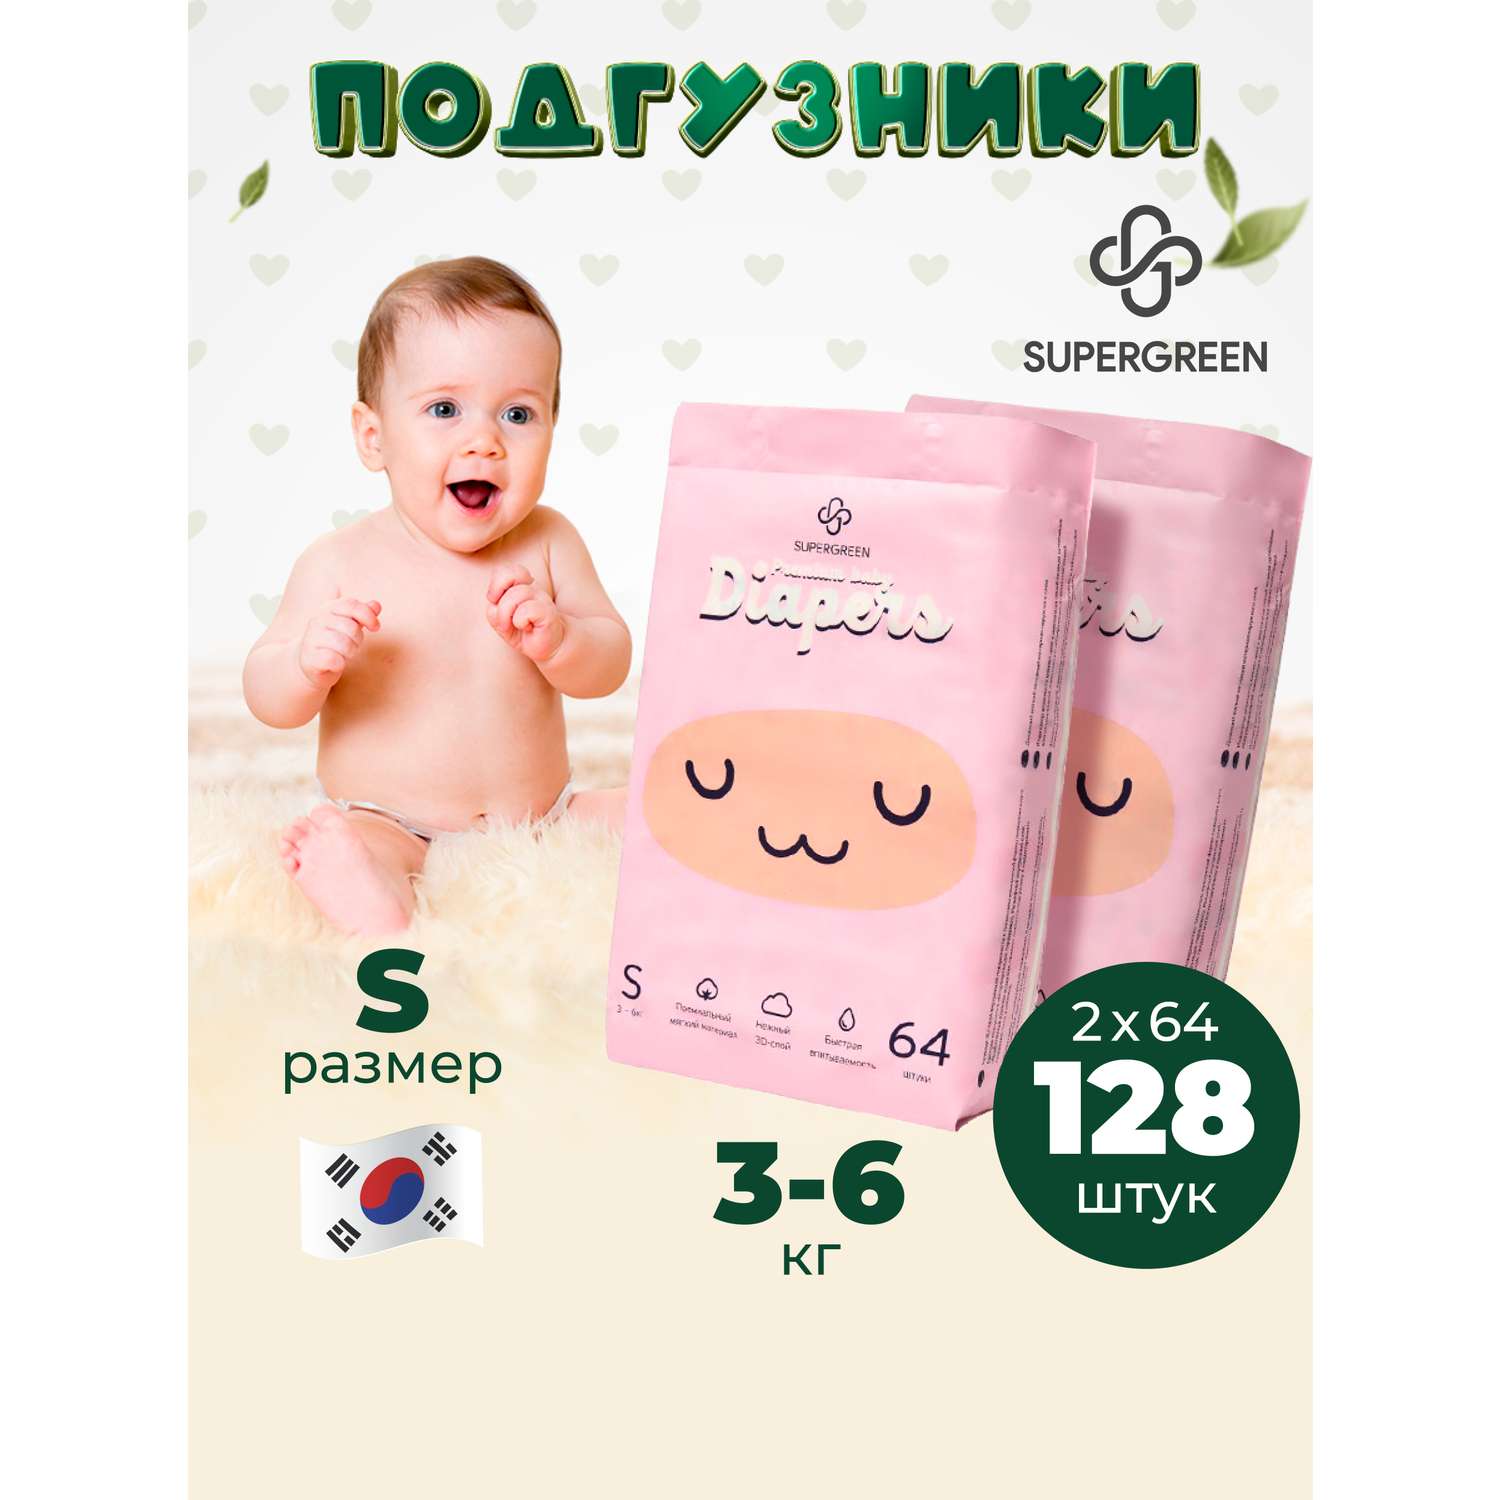 Подгузники SUPERGREEN Premium baby Diapers S размер 2 упаковки по 64 шт 3-6 кг ультрамягкие - фото 1